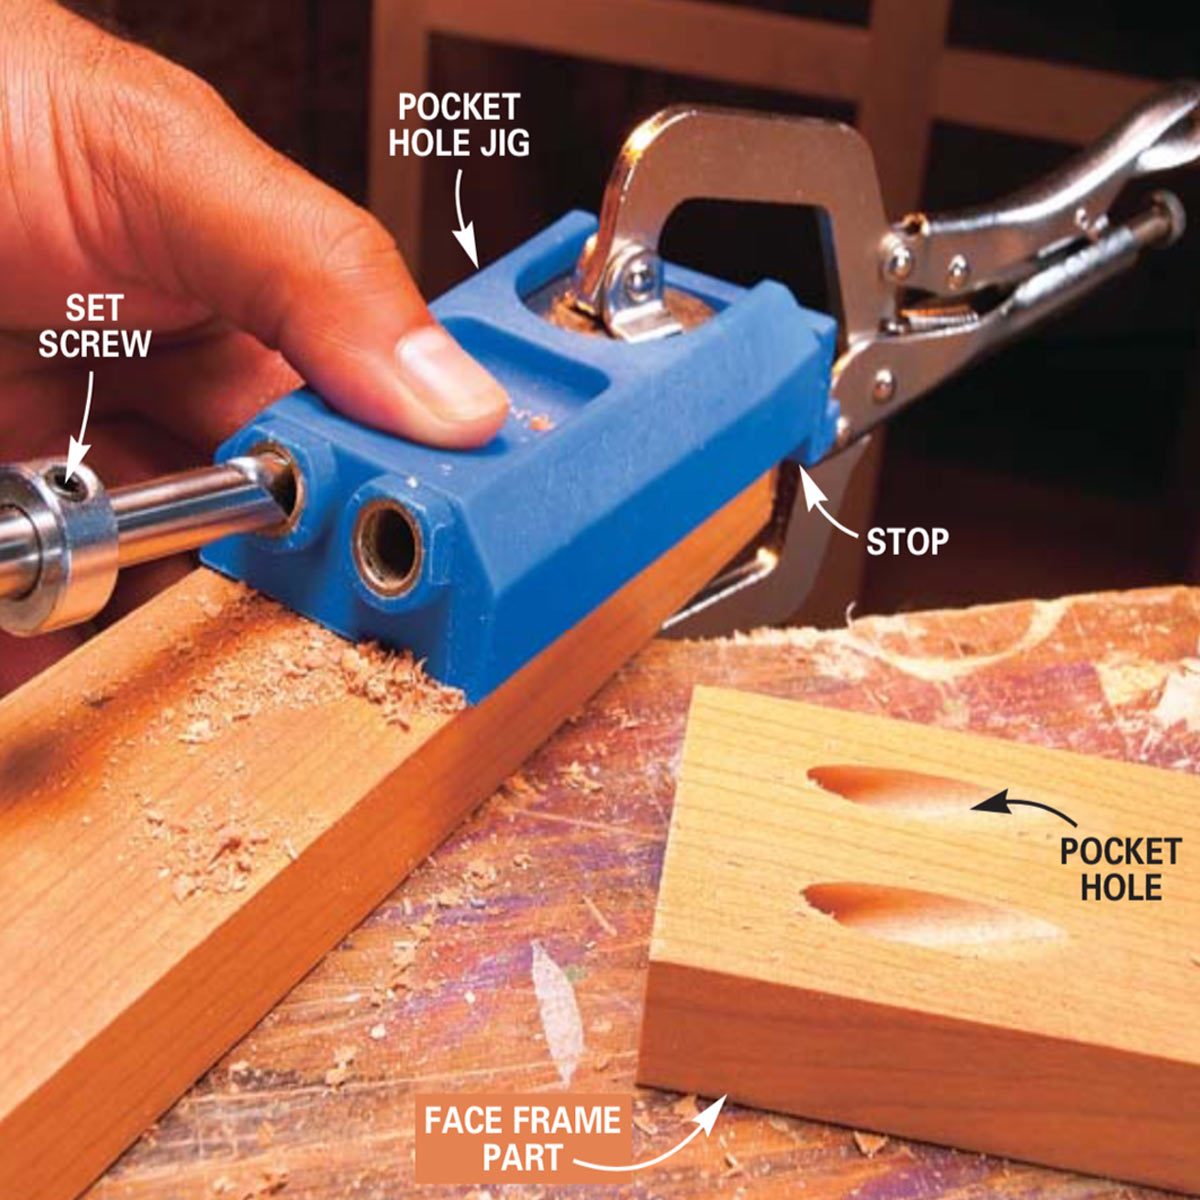 How To Use A Pocket Hole Jig 